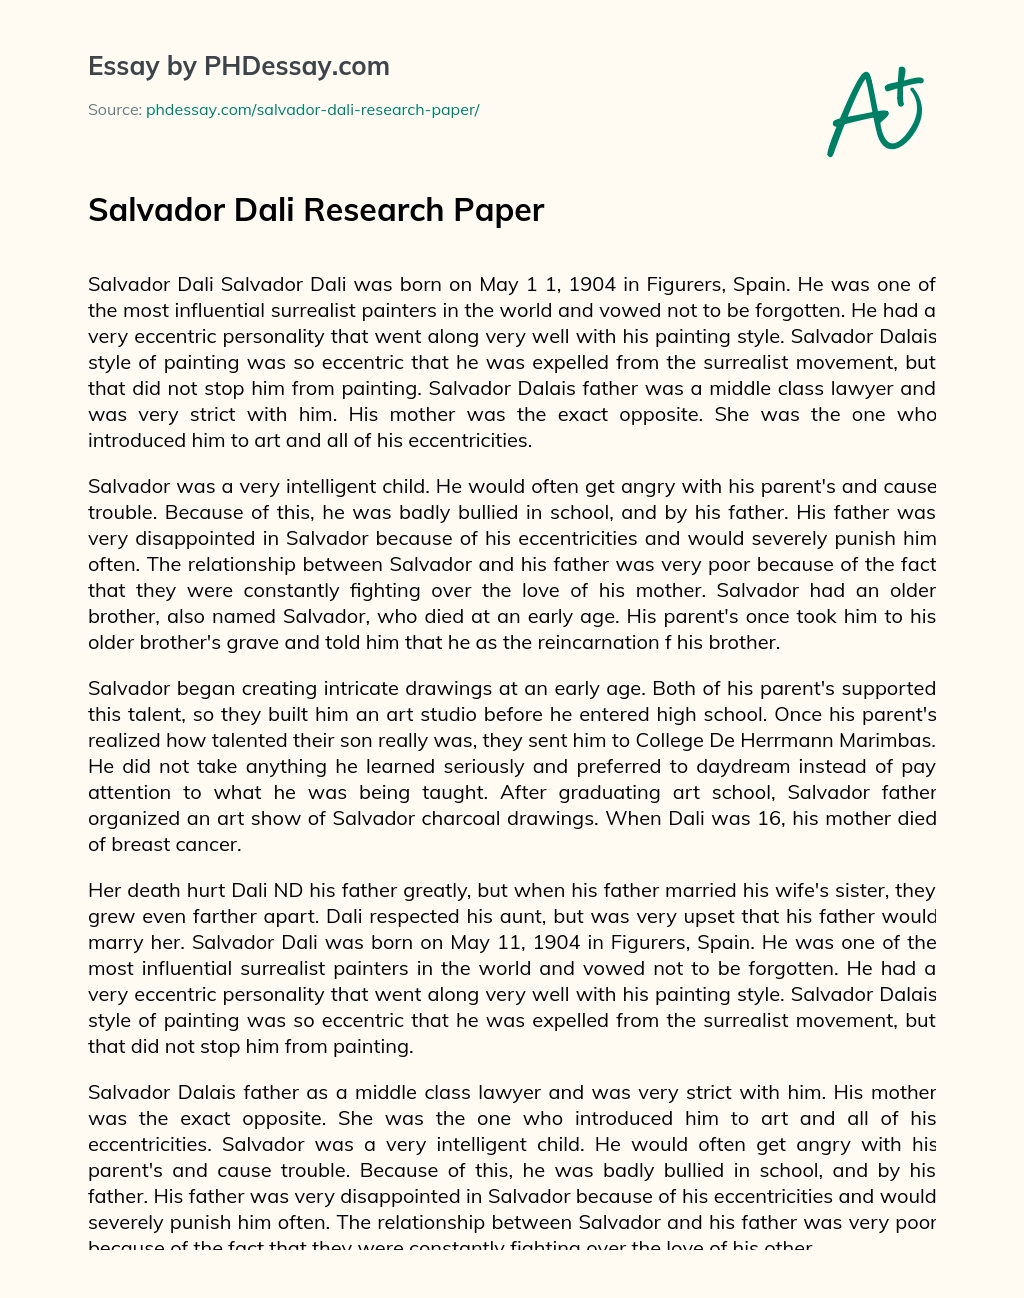 Salvador Dali Research Paper essay